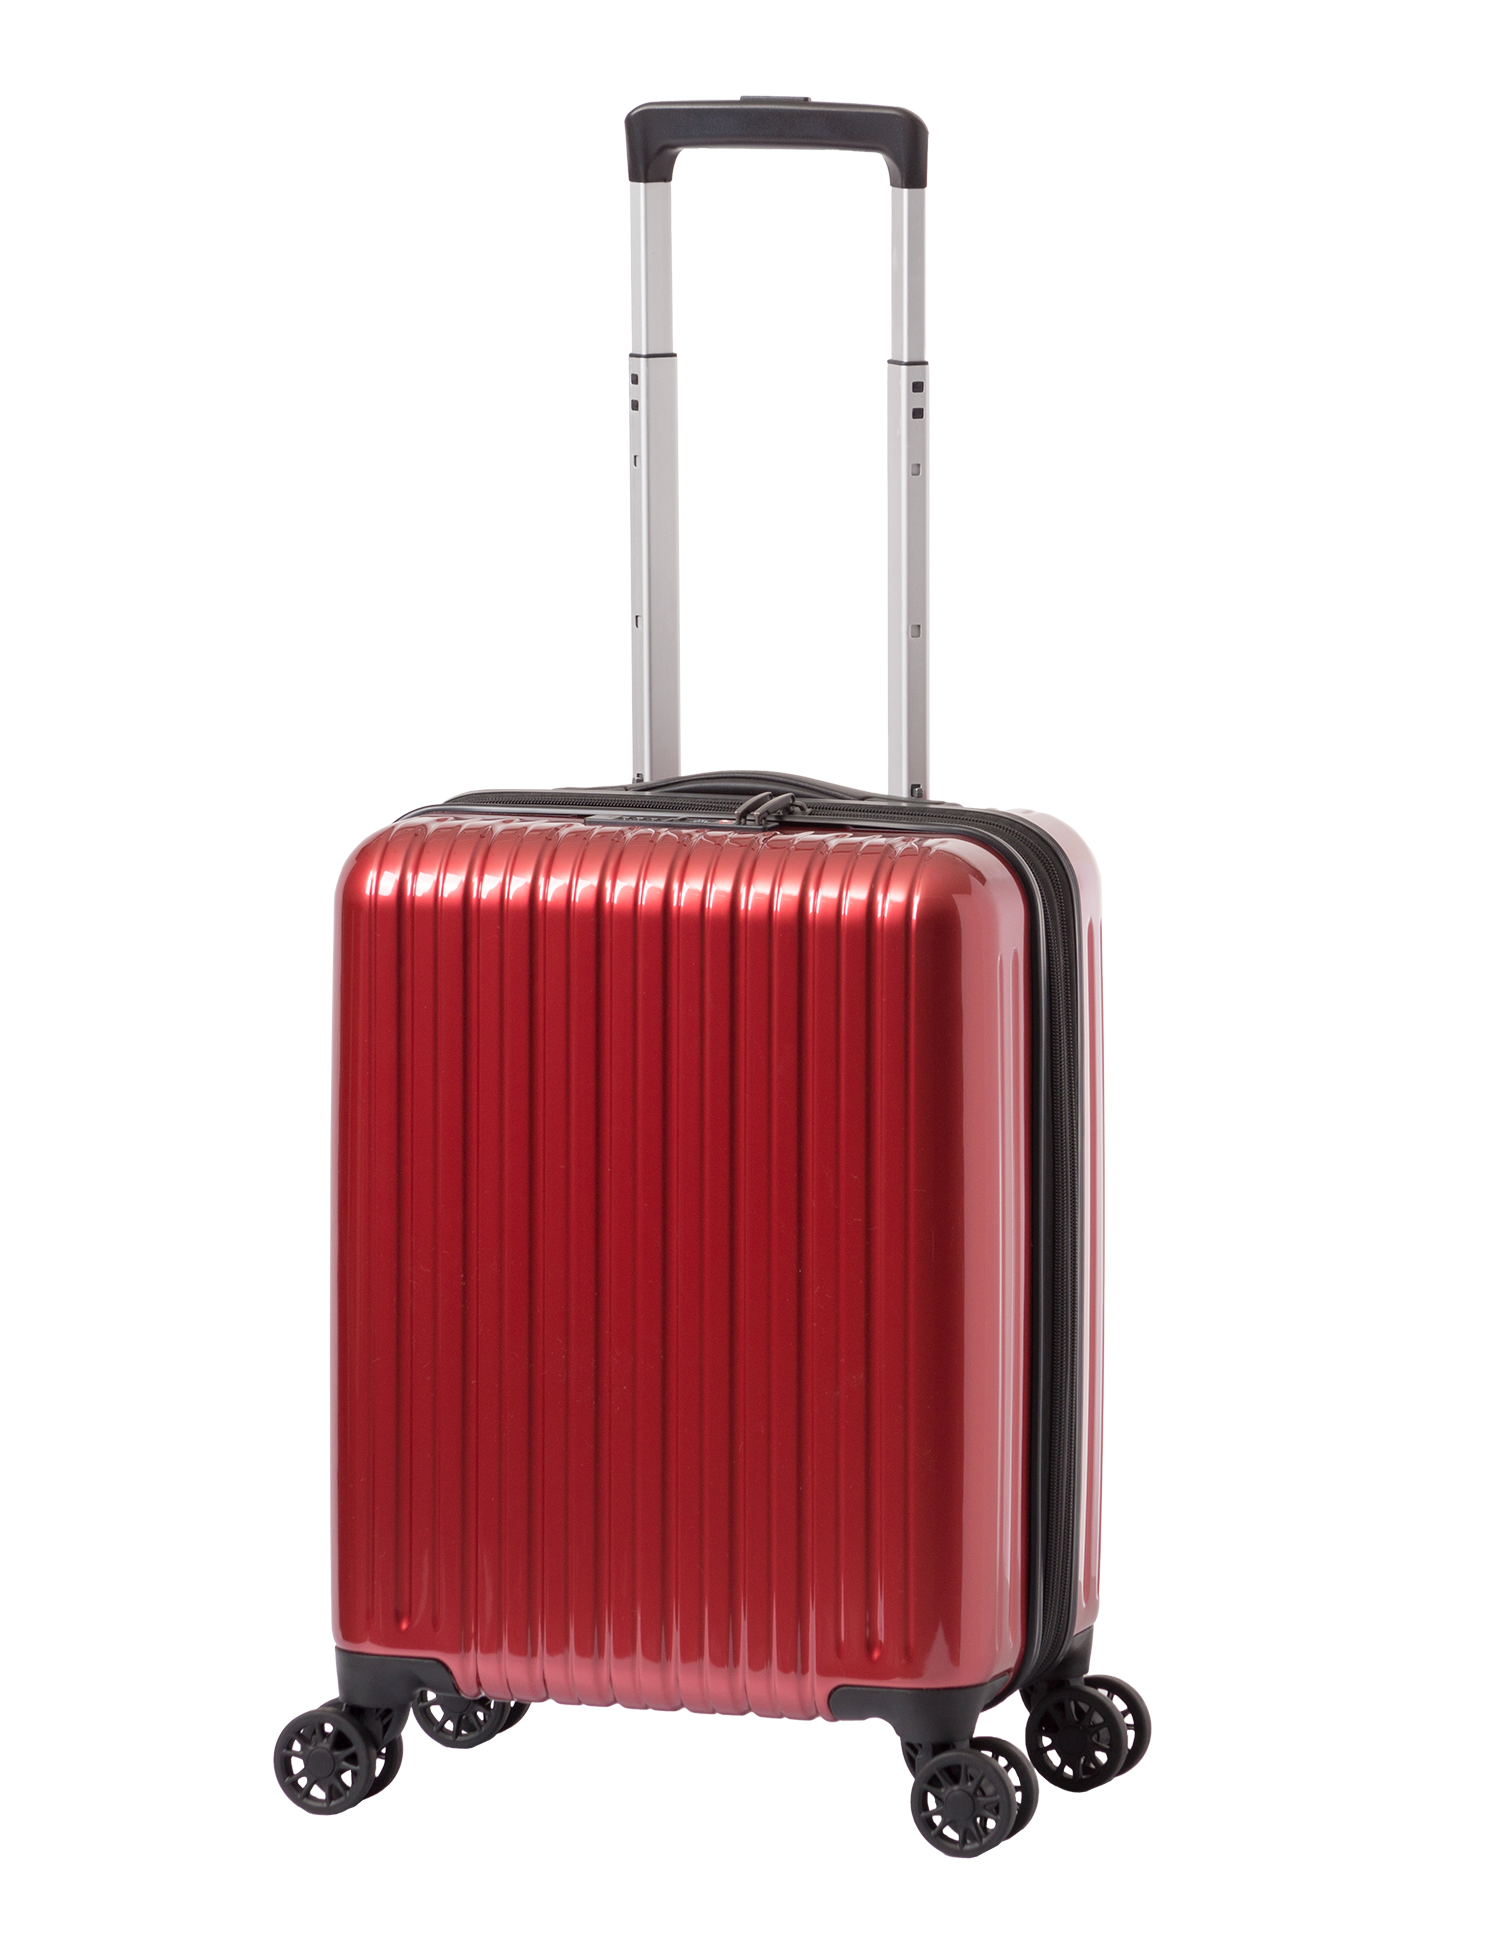 アジア・ラゲージのスーツケース ALI-9327-17W | アジア・ラゲージ